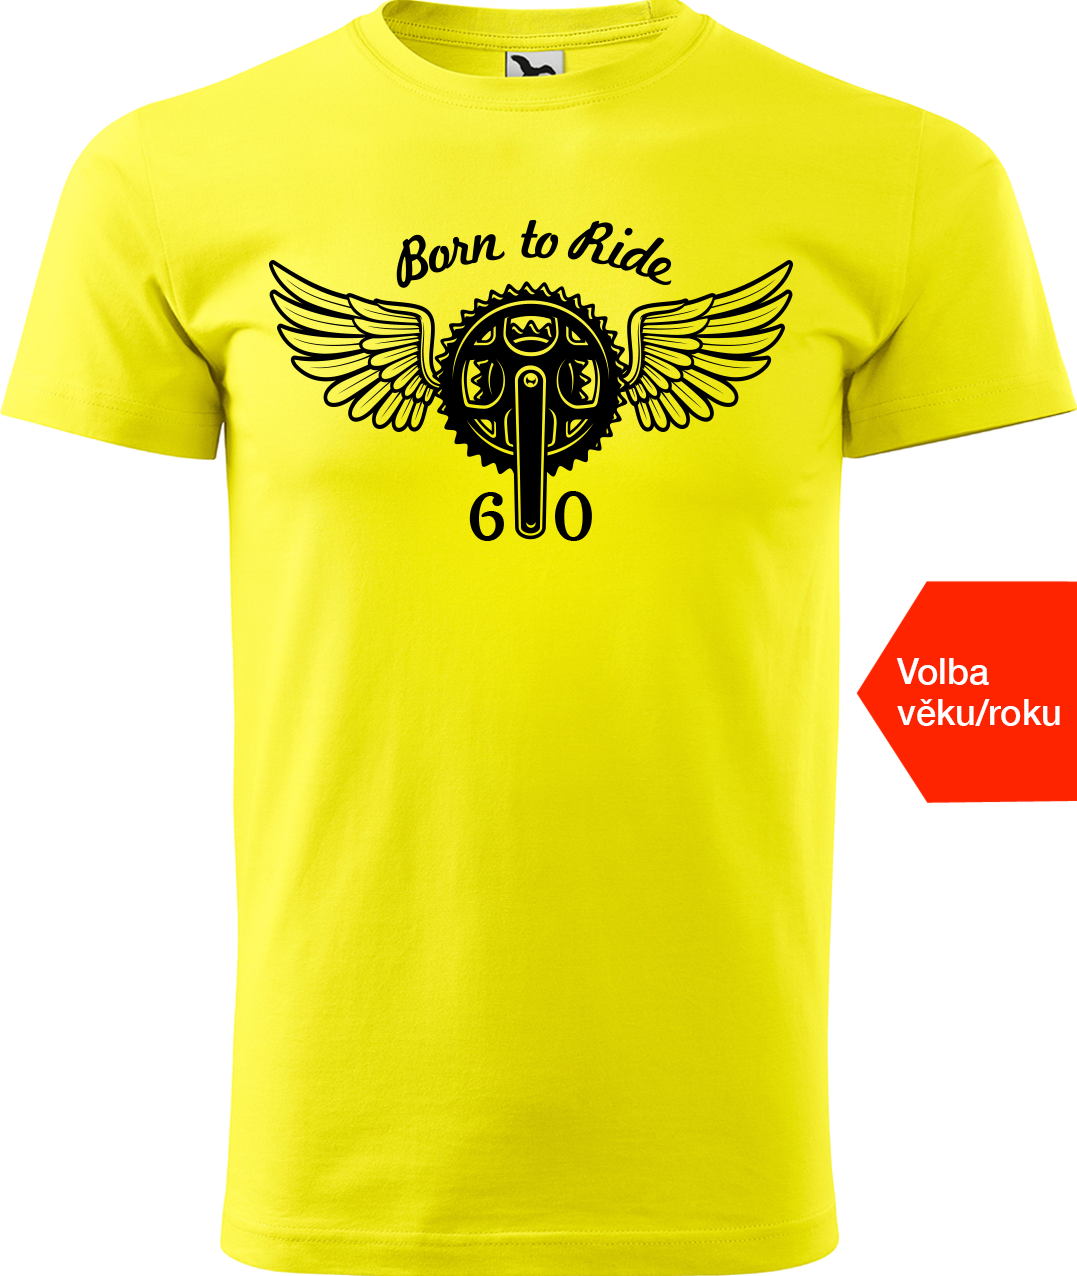 Pánské tričko pro cyklistu s věkem - Born to Ride (převodník) Velikost: S, Barva: Žlutá (04)